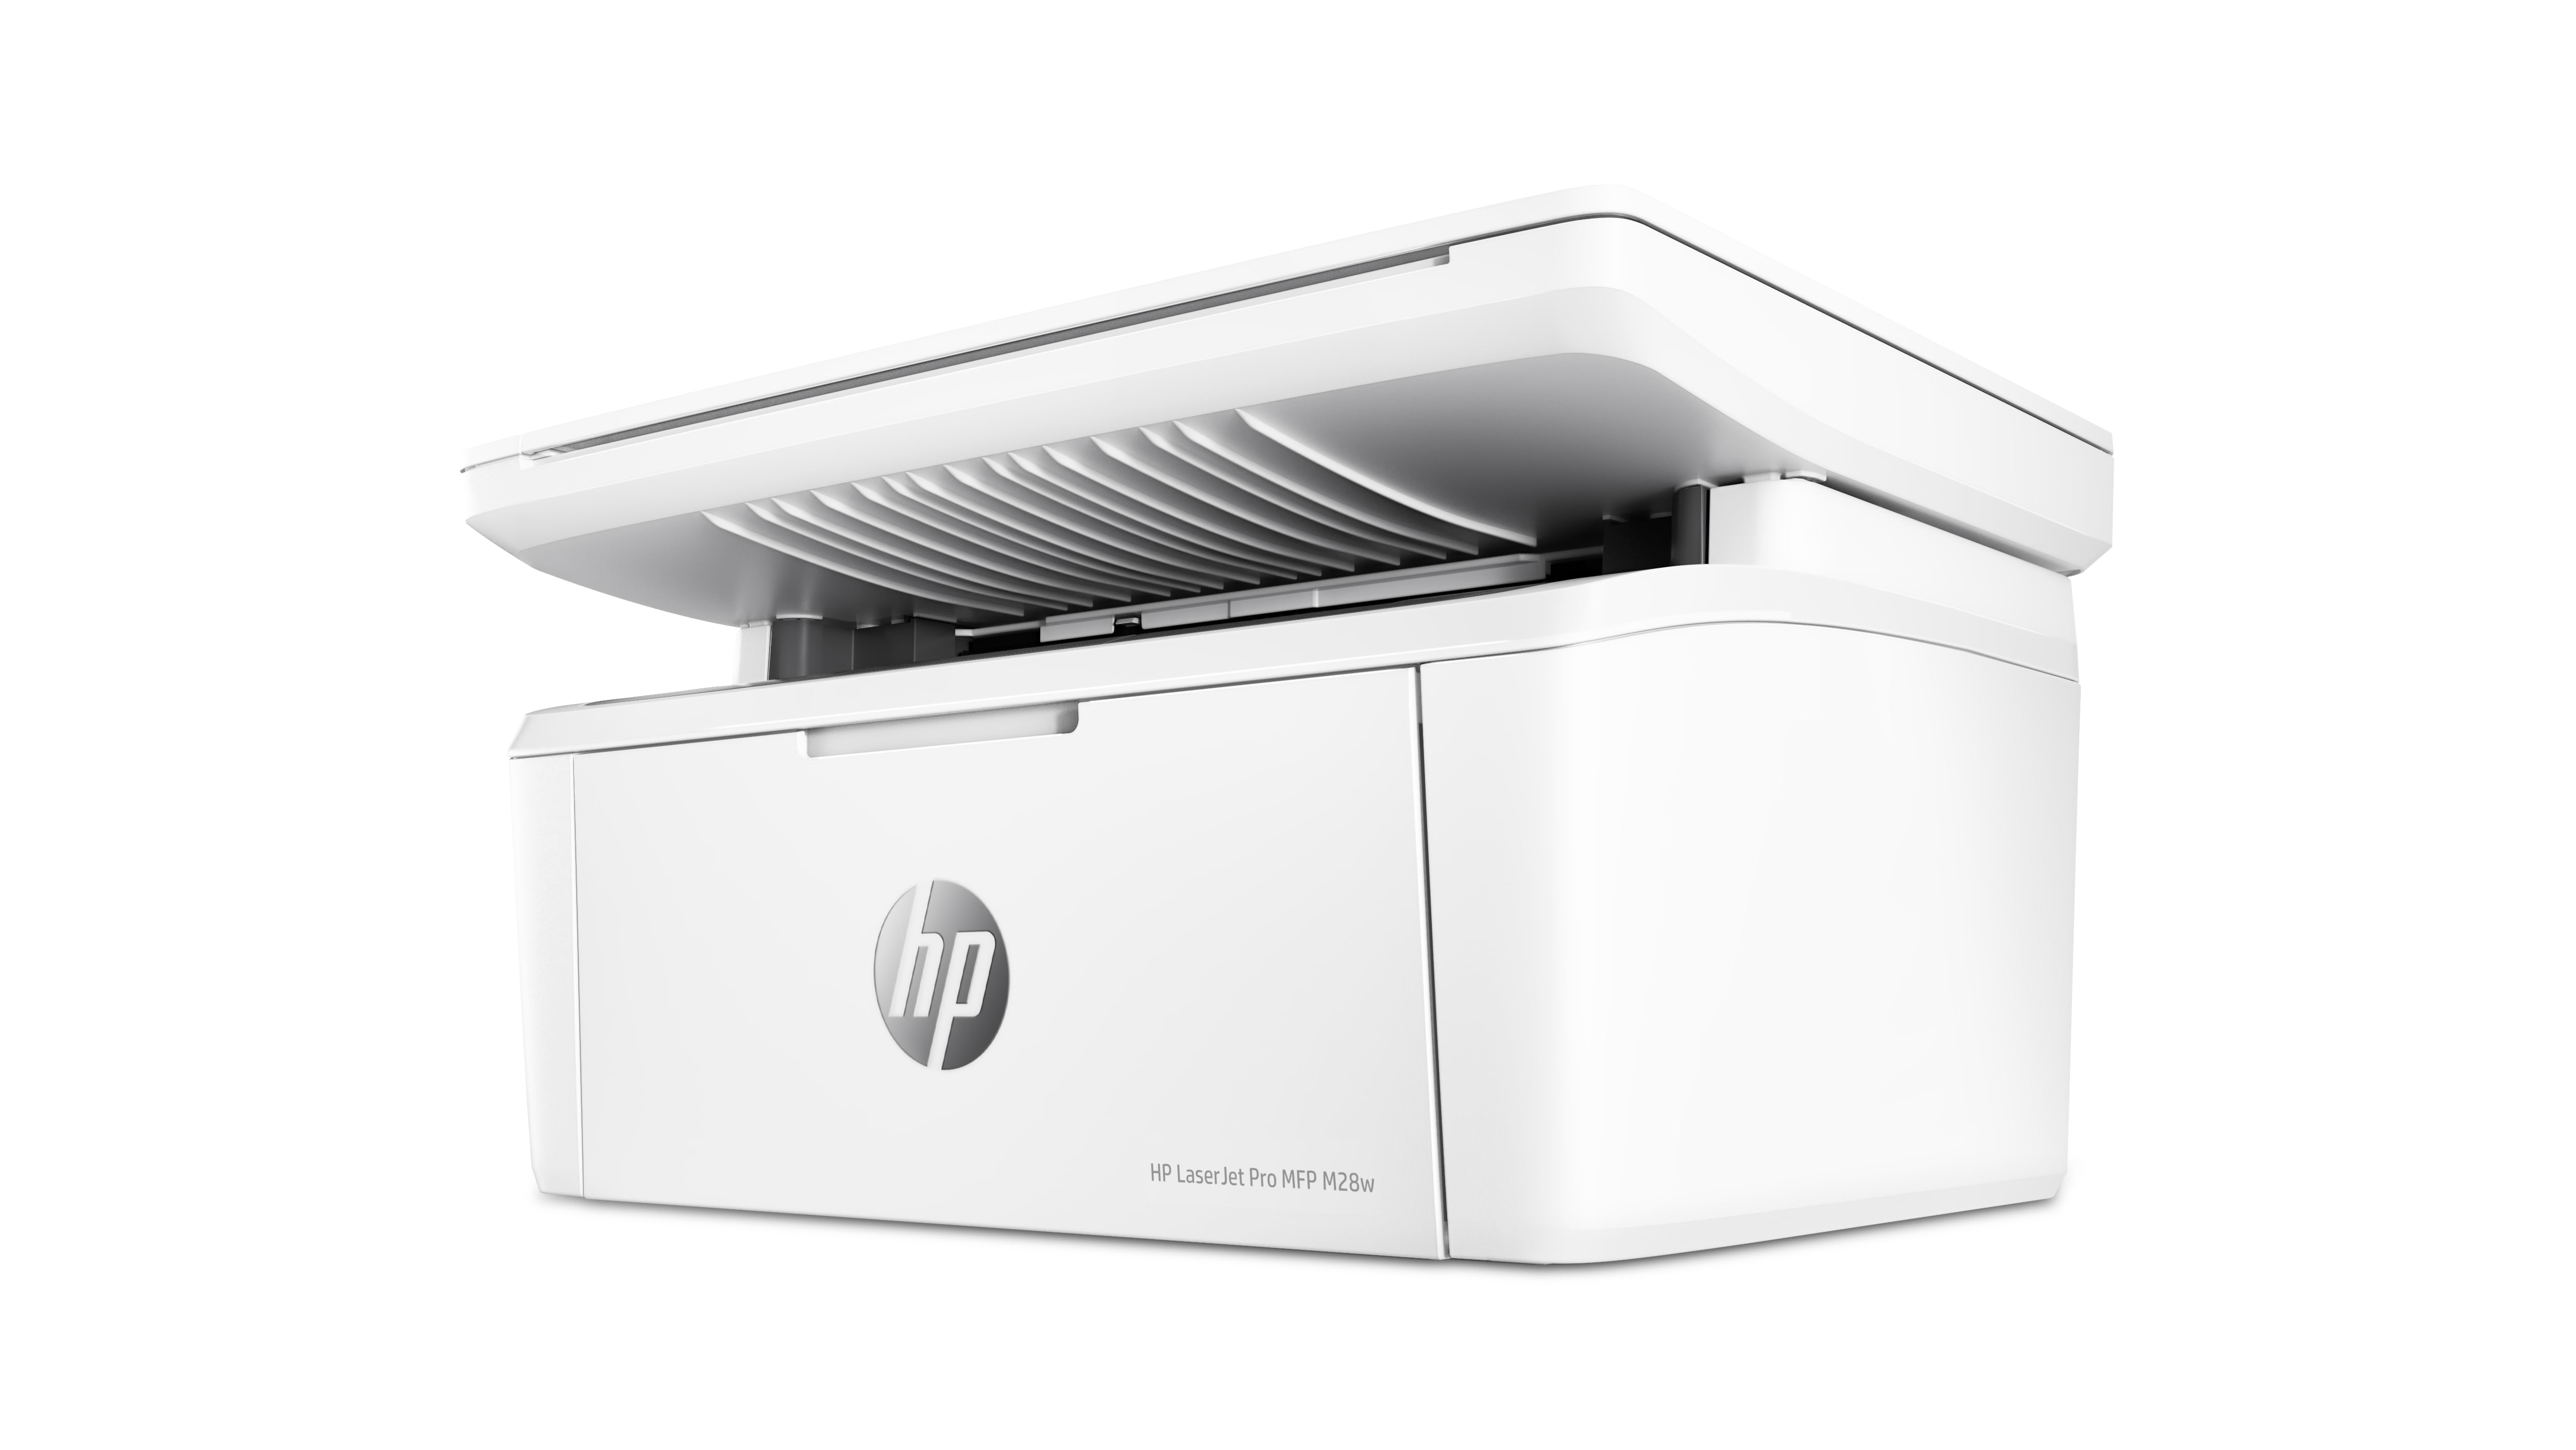 HP LaserJet Pro MFP M28w Wireless Printer